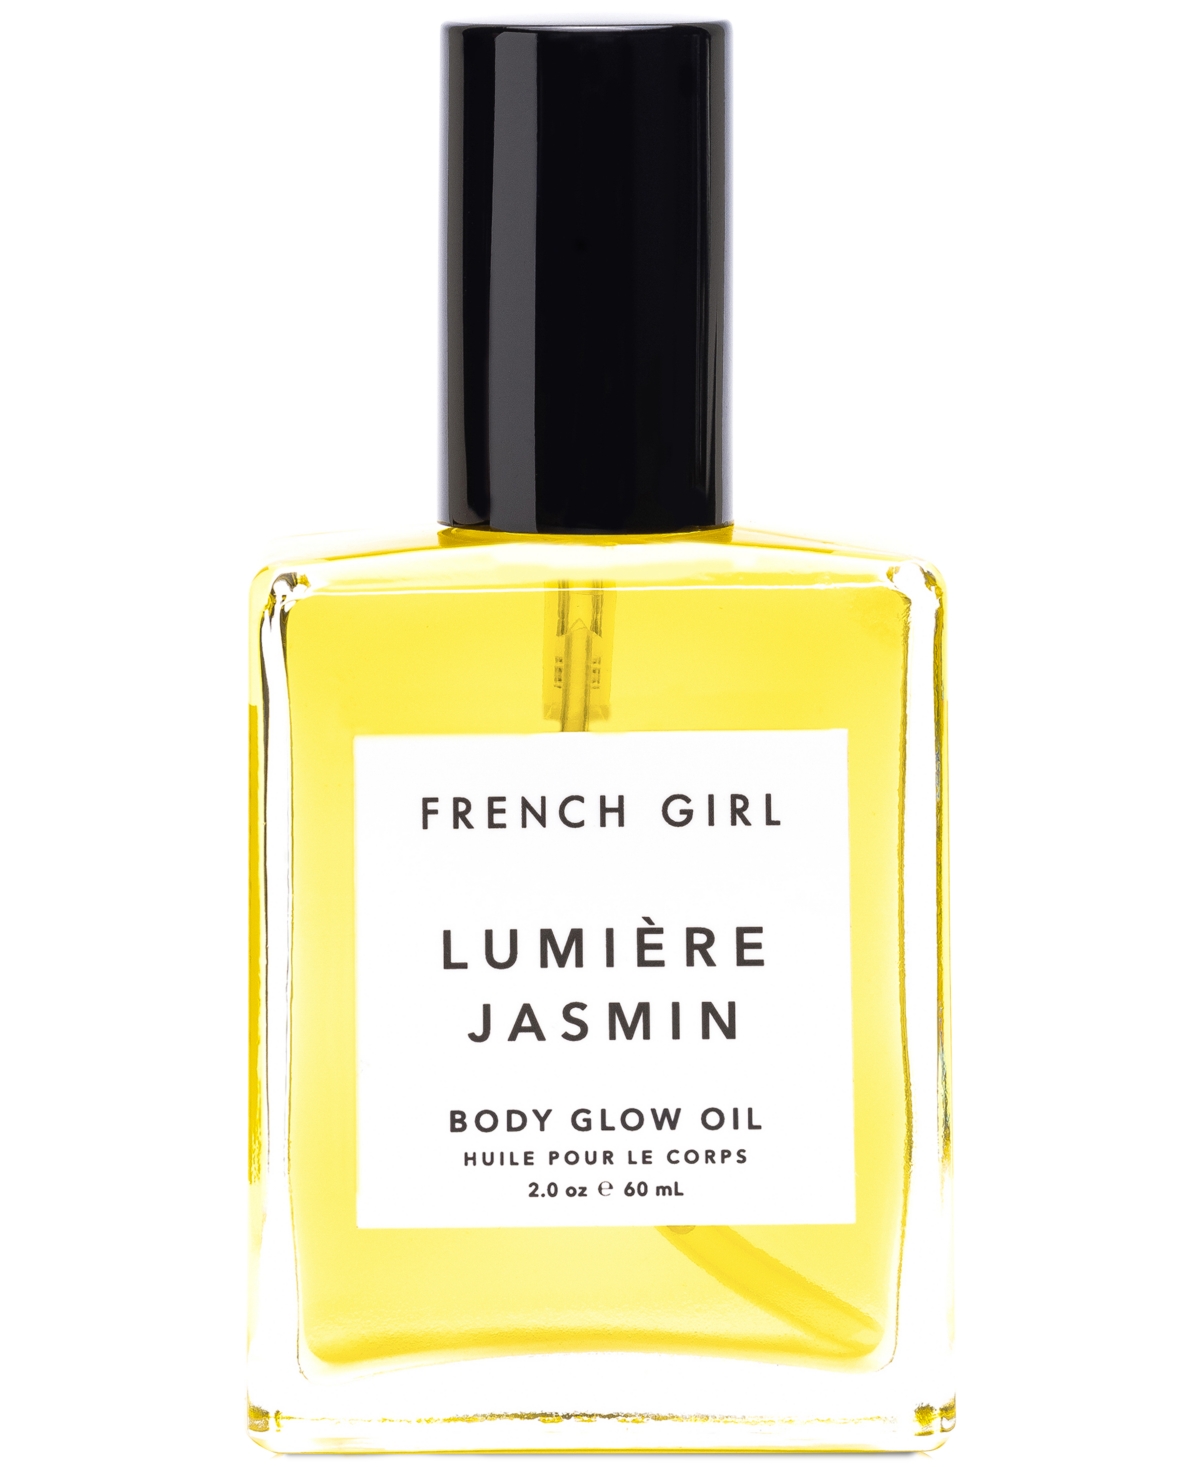 French Girl Lumiere Jasmin Body Glow Oil, 2-oz.